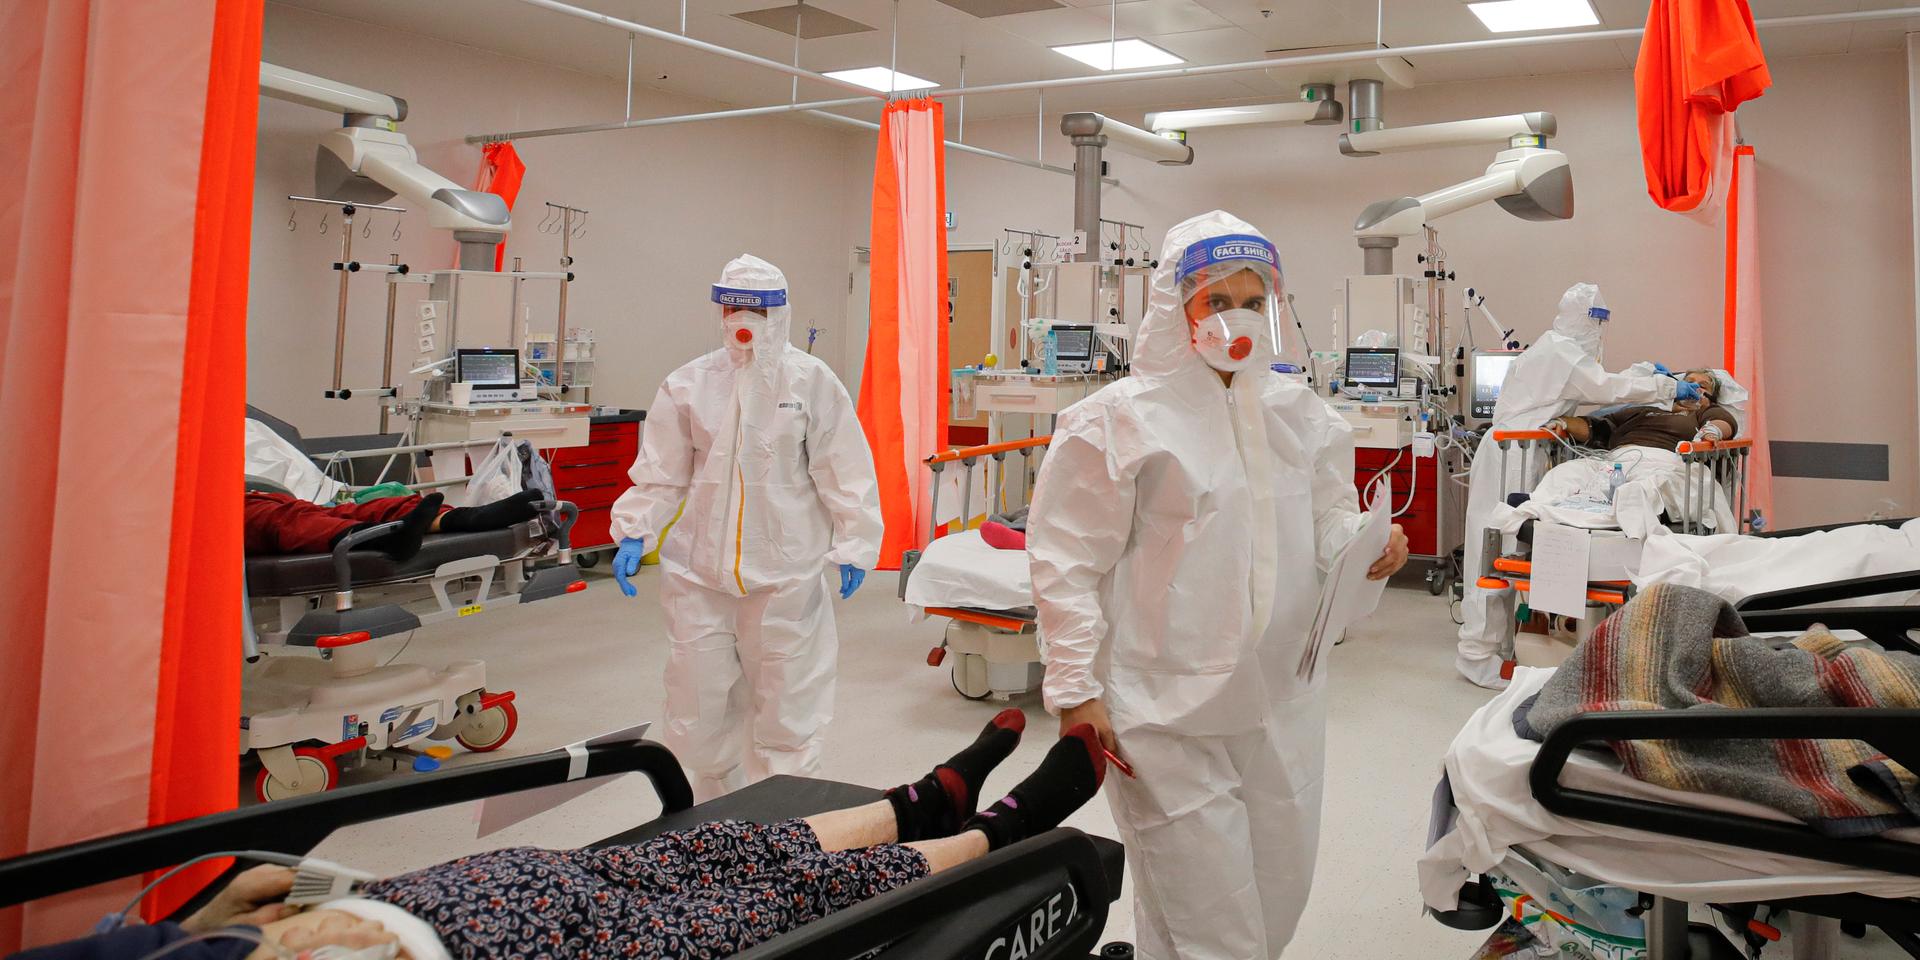 Patienter på akutintaget på Bagdasar-Arseni-sjukhuset i Rumäniens huvudstad Bukarest. Mottagningen har gjorts om till covid-19-avdelning.